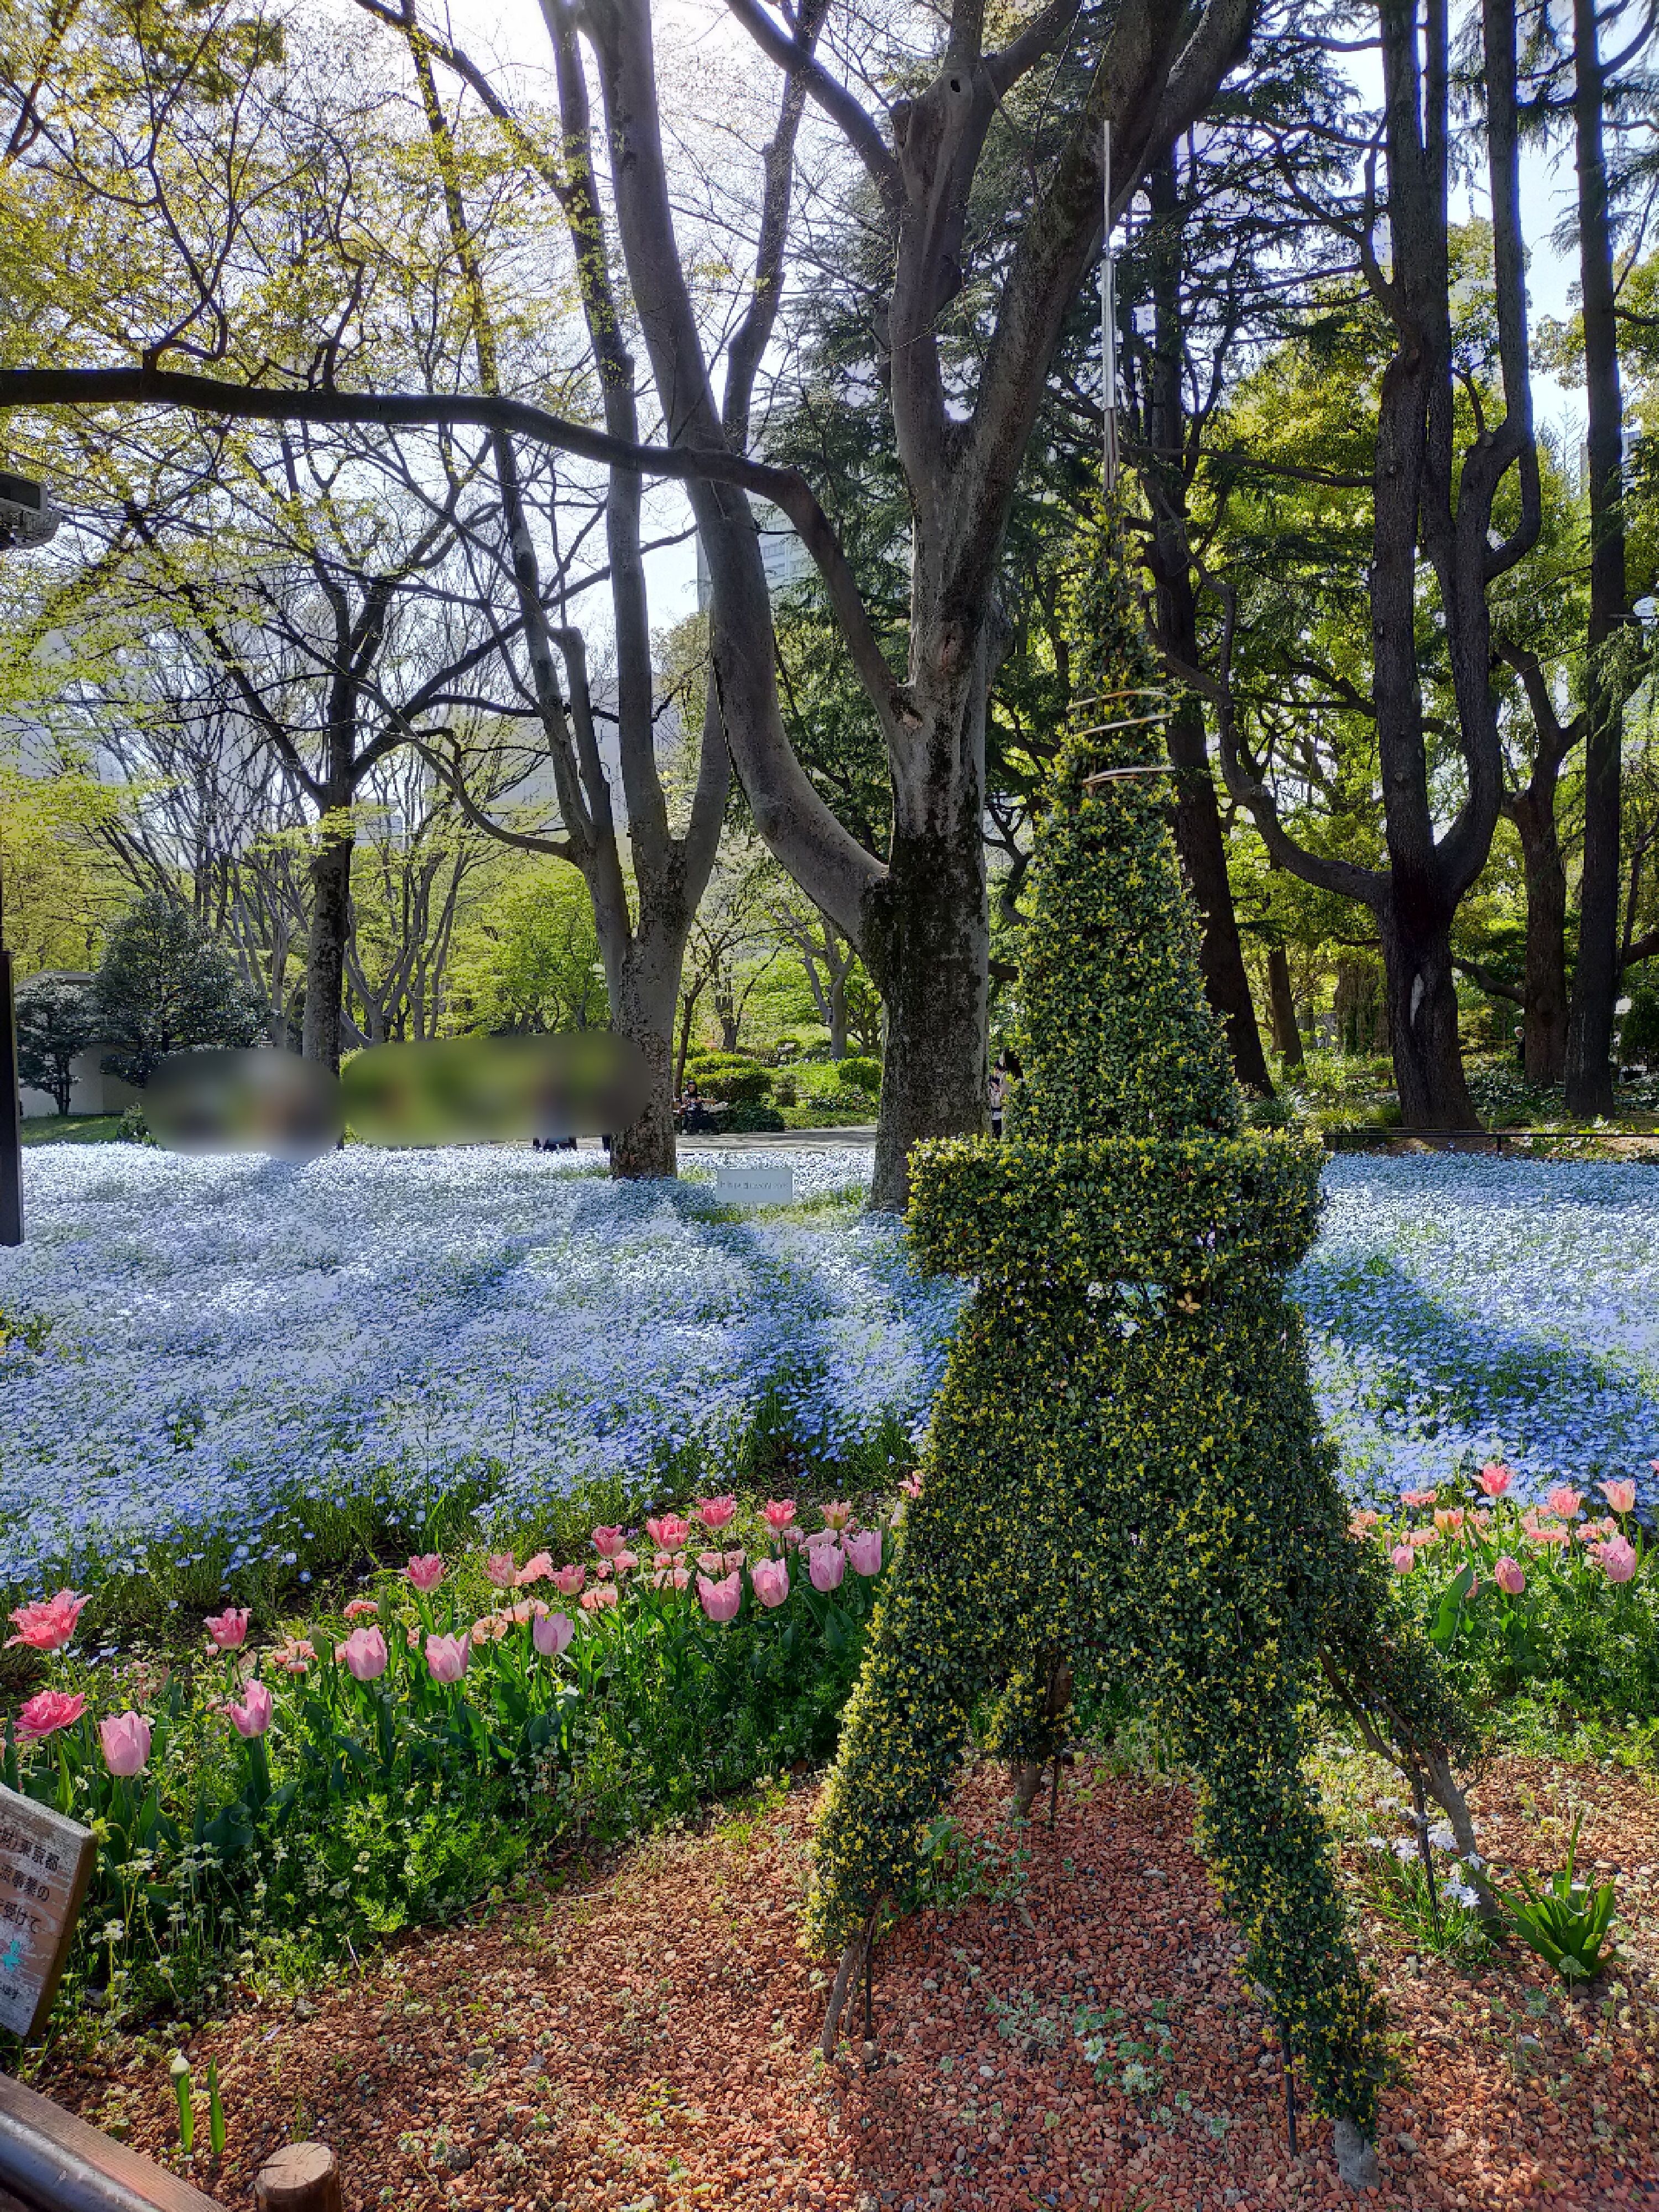 四月的東京日比谷公園色彩繽紛 不只有鬱金香還有美麗的粉蝶花海 日本板 Popdaily 波波黛莉